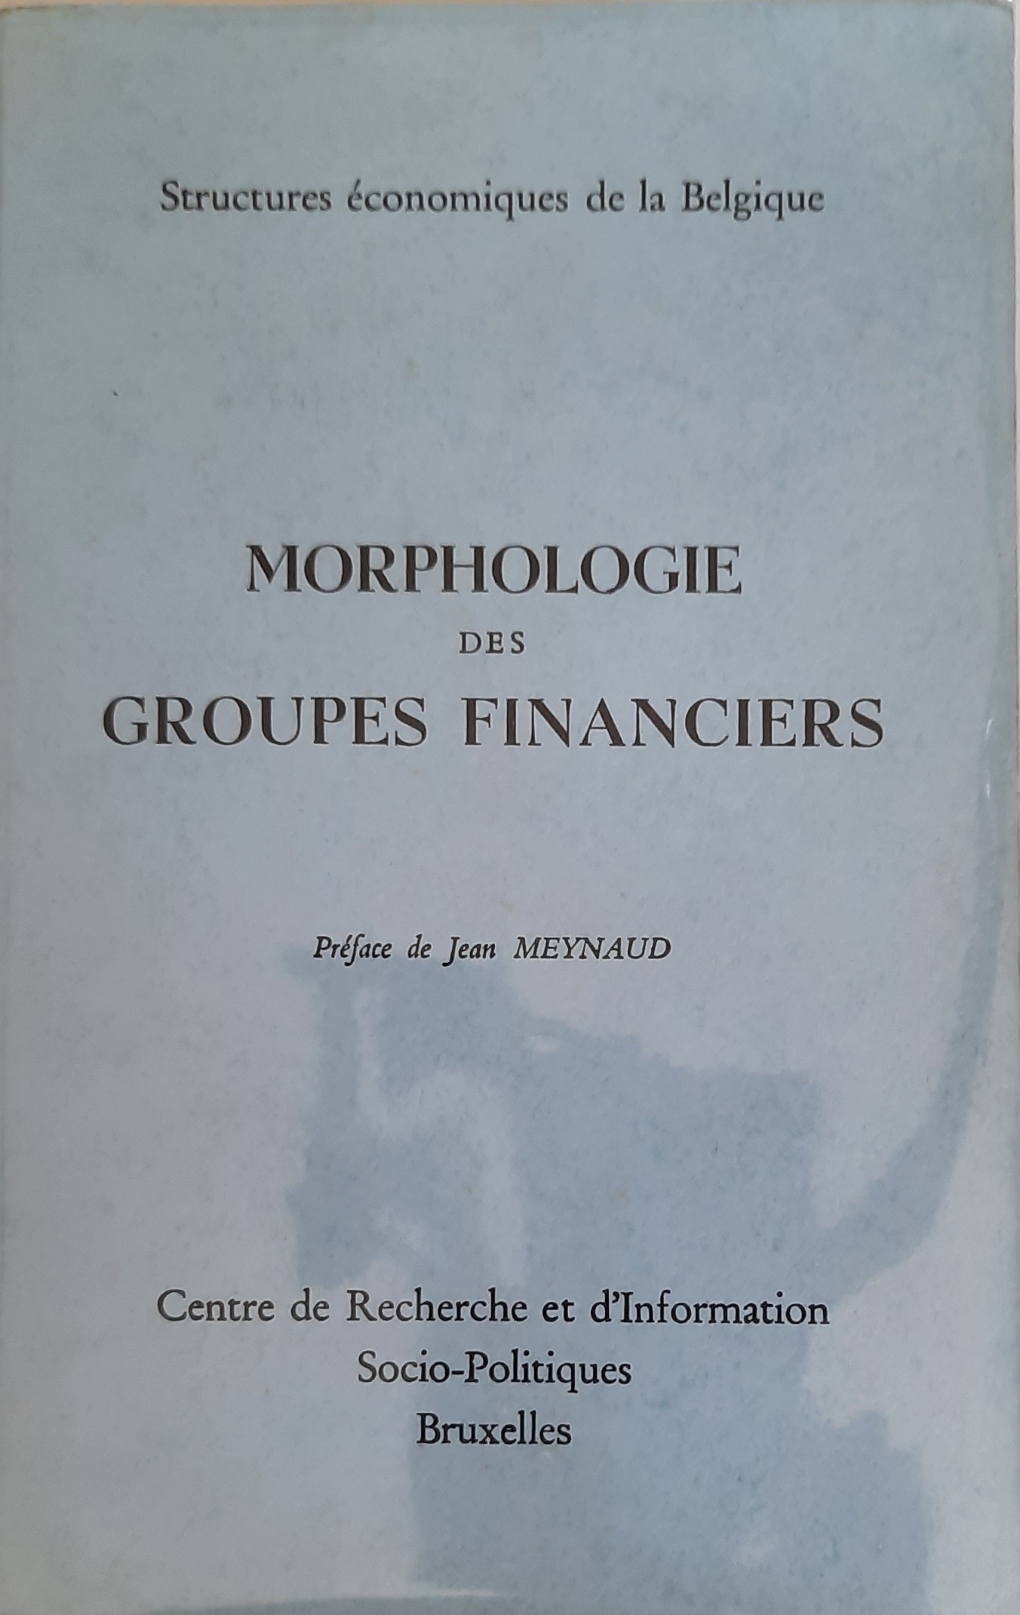 CRISP, DE WASSEIGE Yves (supervision), MEYNAUD Jean (prface) - Morphologie des groupes financiers. Structures conomiques de la Belgique.